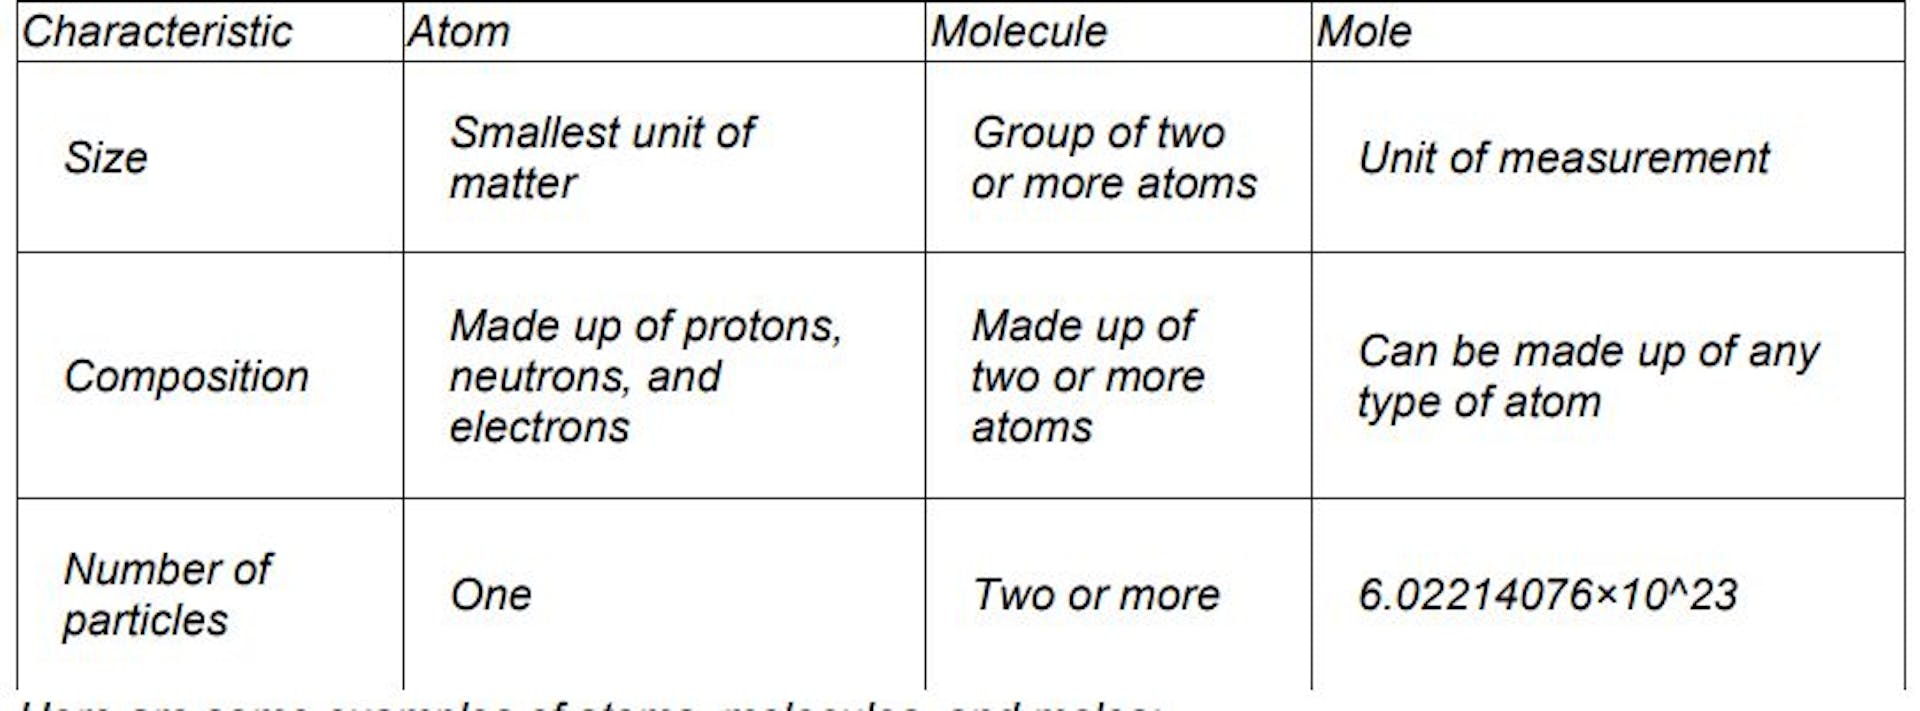 featured image - Wie GenAIbots den Unterschied zwischen Atomen, Molekülen und Molen erklären